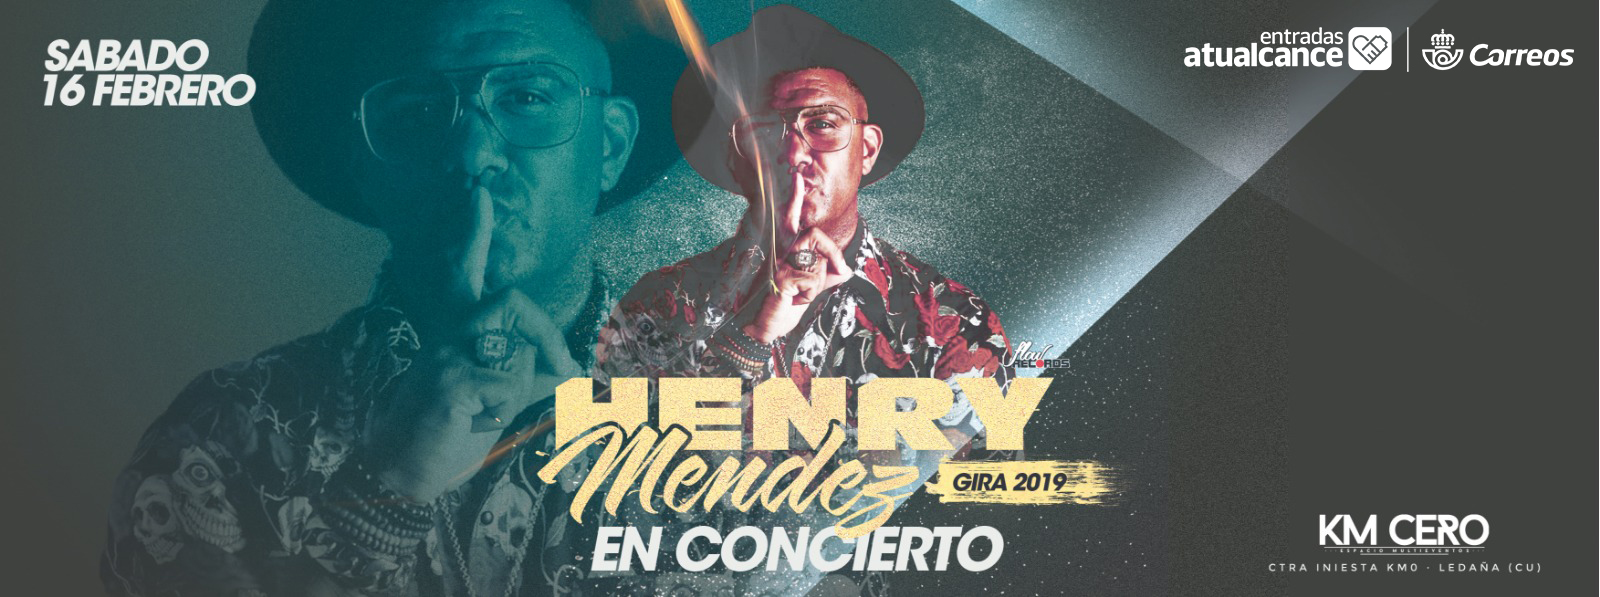 henry-mendez-en-concierto-en-insomnia-5c